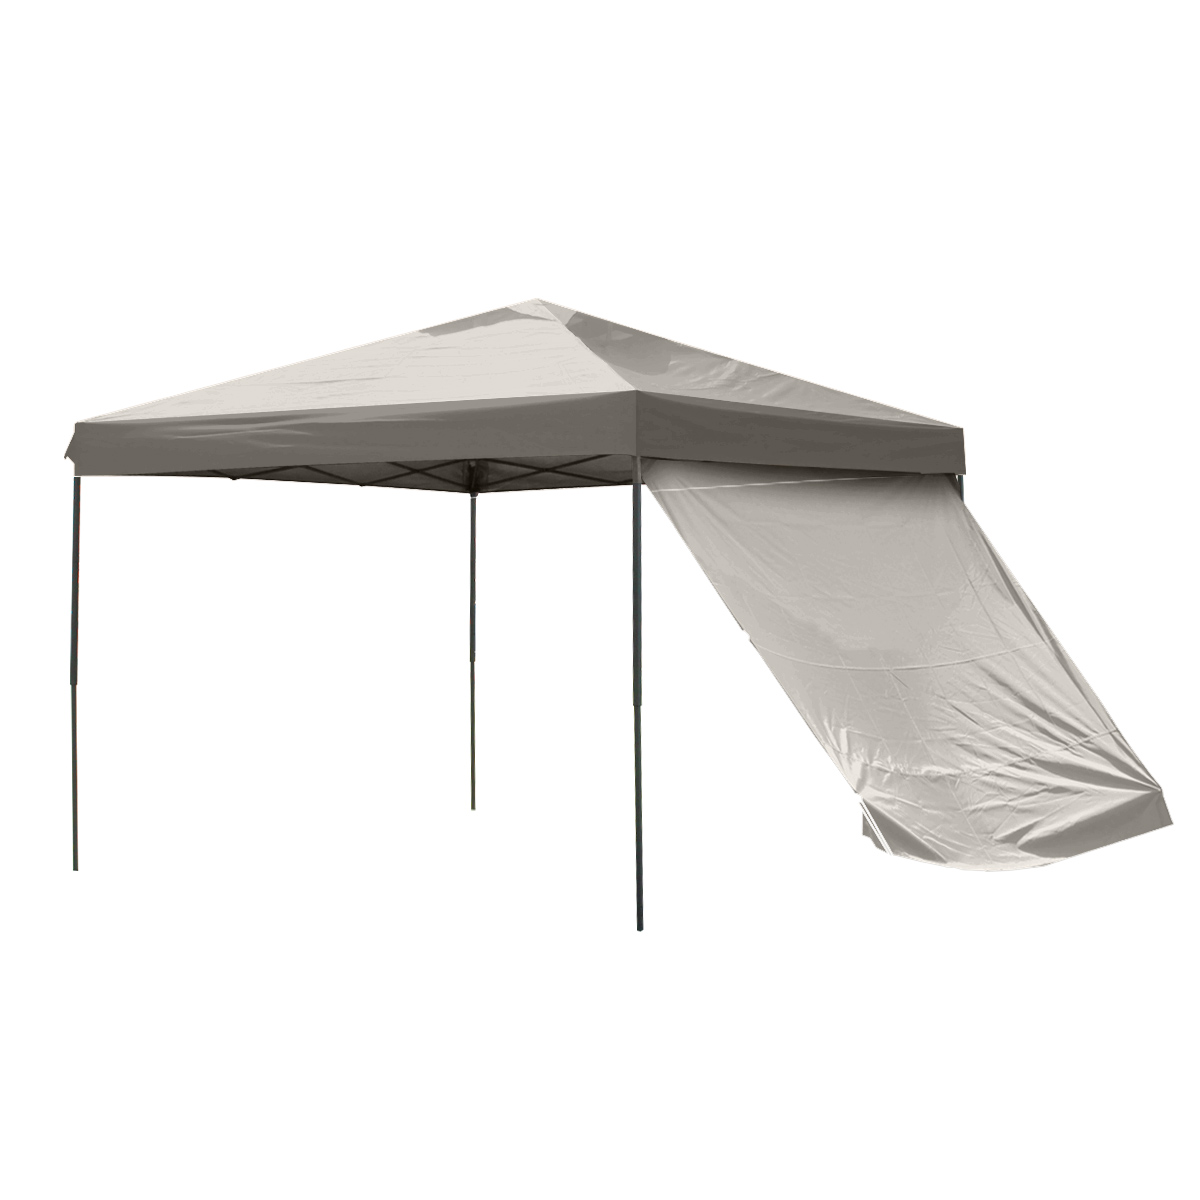 タープテント 3m サイドシート2枚付き 高さ調整可能 テント ワンタッチ サンシェード 軽量 日よけ 耐水 撥水 UVカット キャンプ